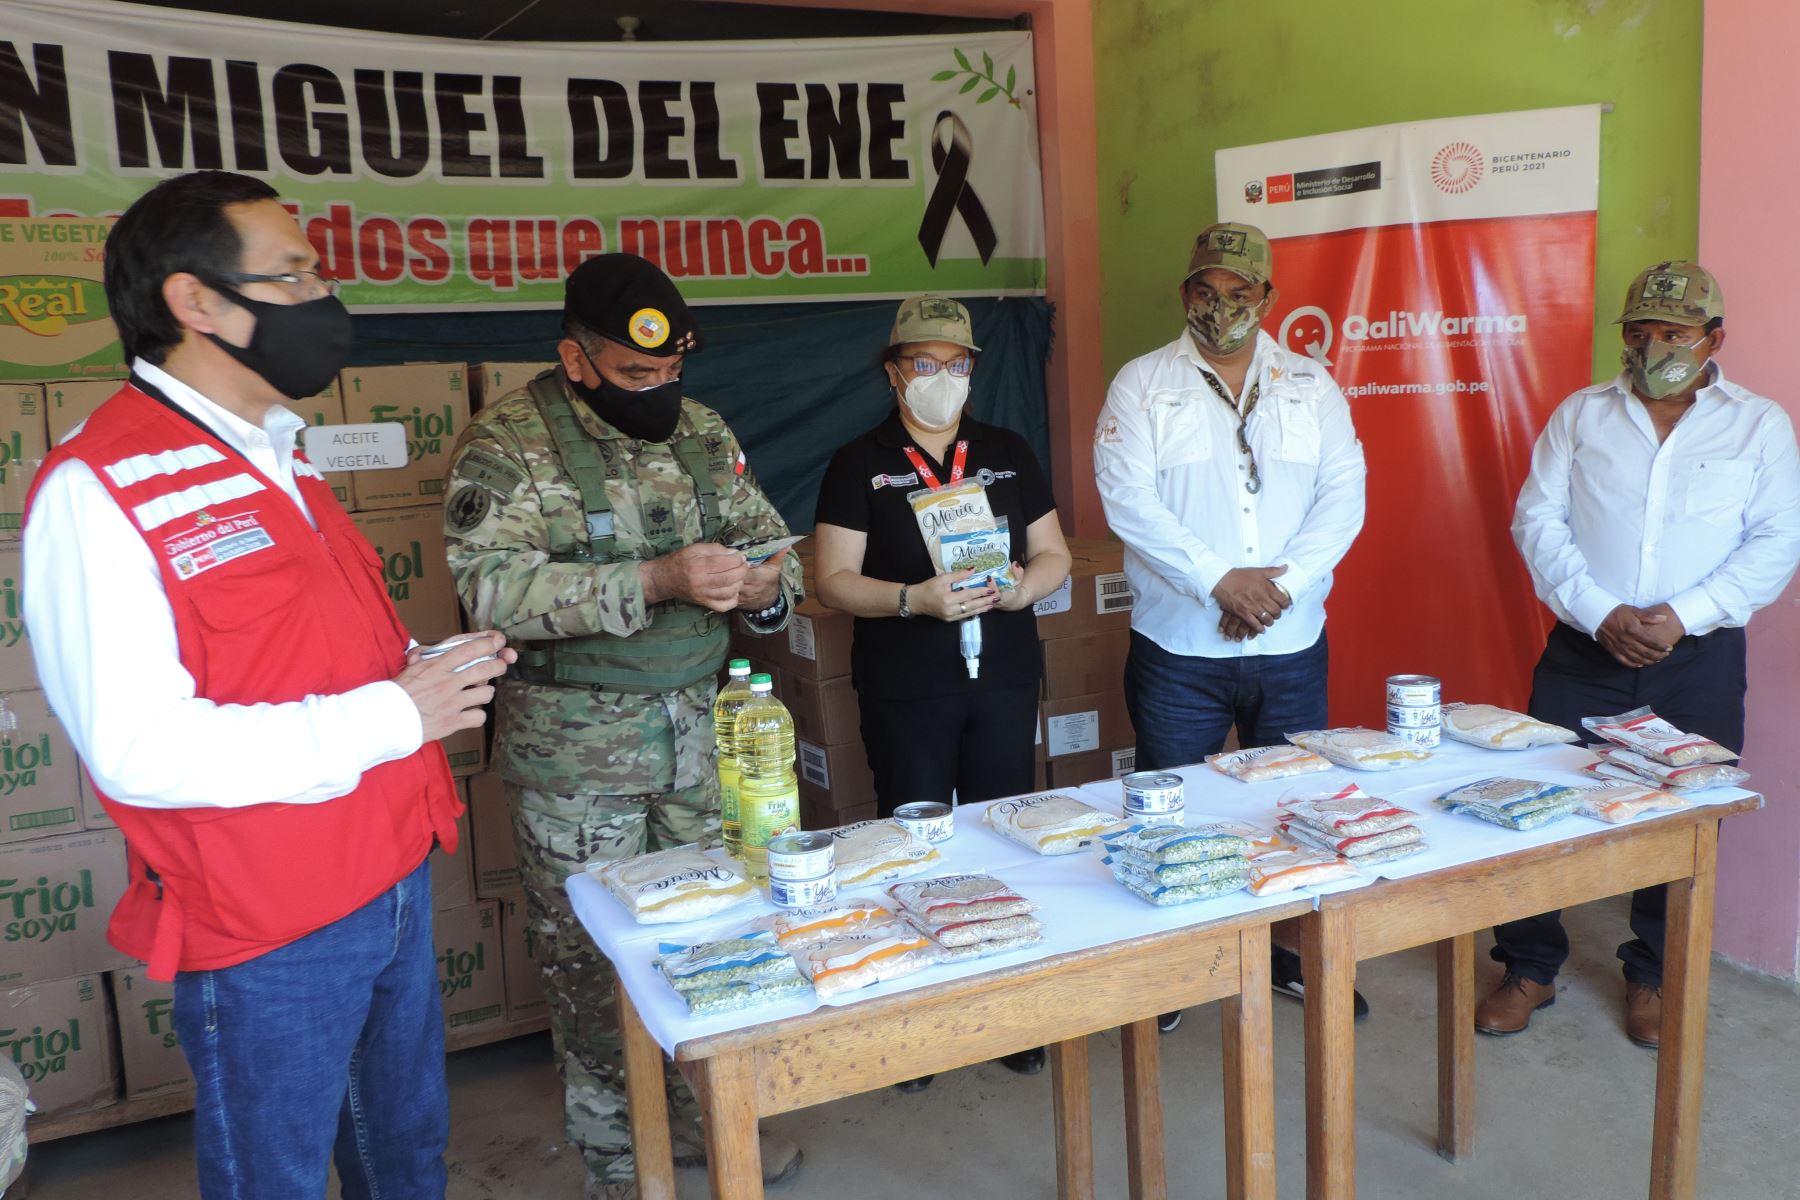 Ministra Silvana Vargas supervisó en Vizcatán del Ene la entrega de 10.37 toneladas de alimentos de Qali Warma a 1800 personas vulnerables. Foto: Midis/Difusión